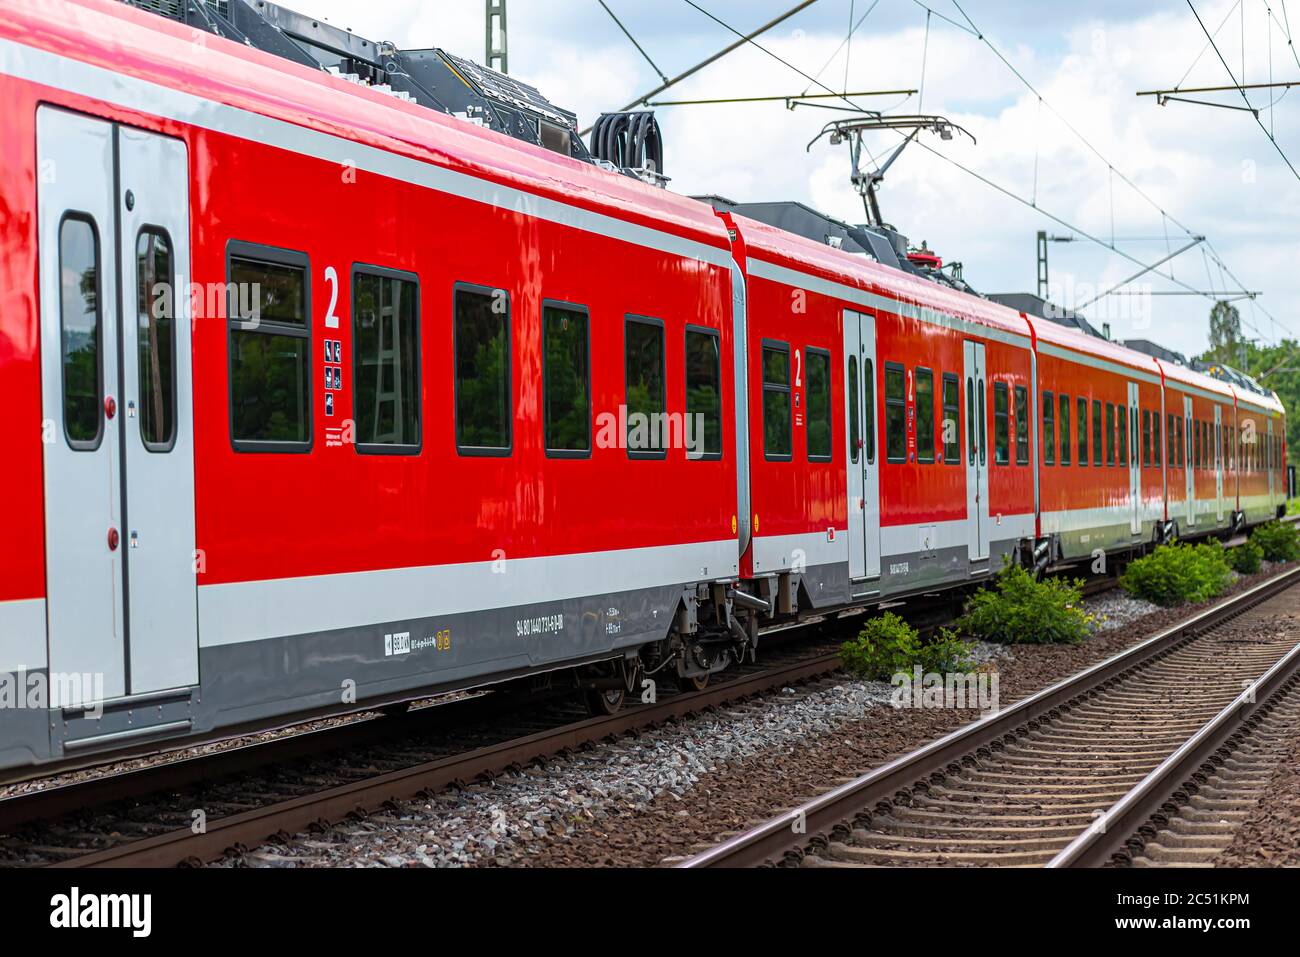 Koblenz Deutschland, 22. Juni 2020. Ein elektrischer Personenzug der Deutschen Bahn AG, der an einem kleinen Bahnhof in Koblenz i ankommt Stockfoto